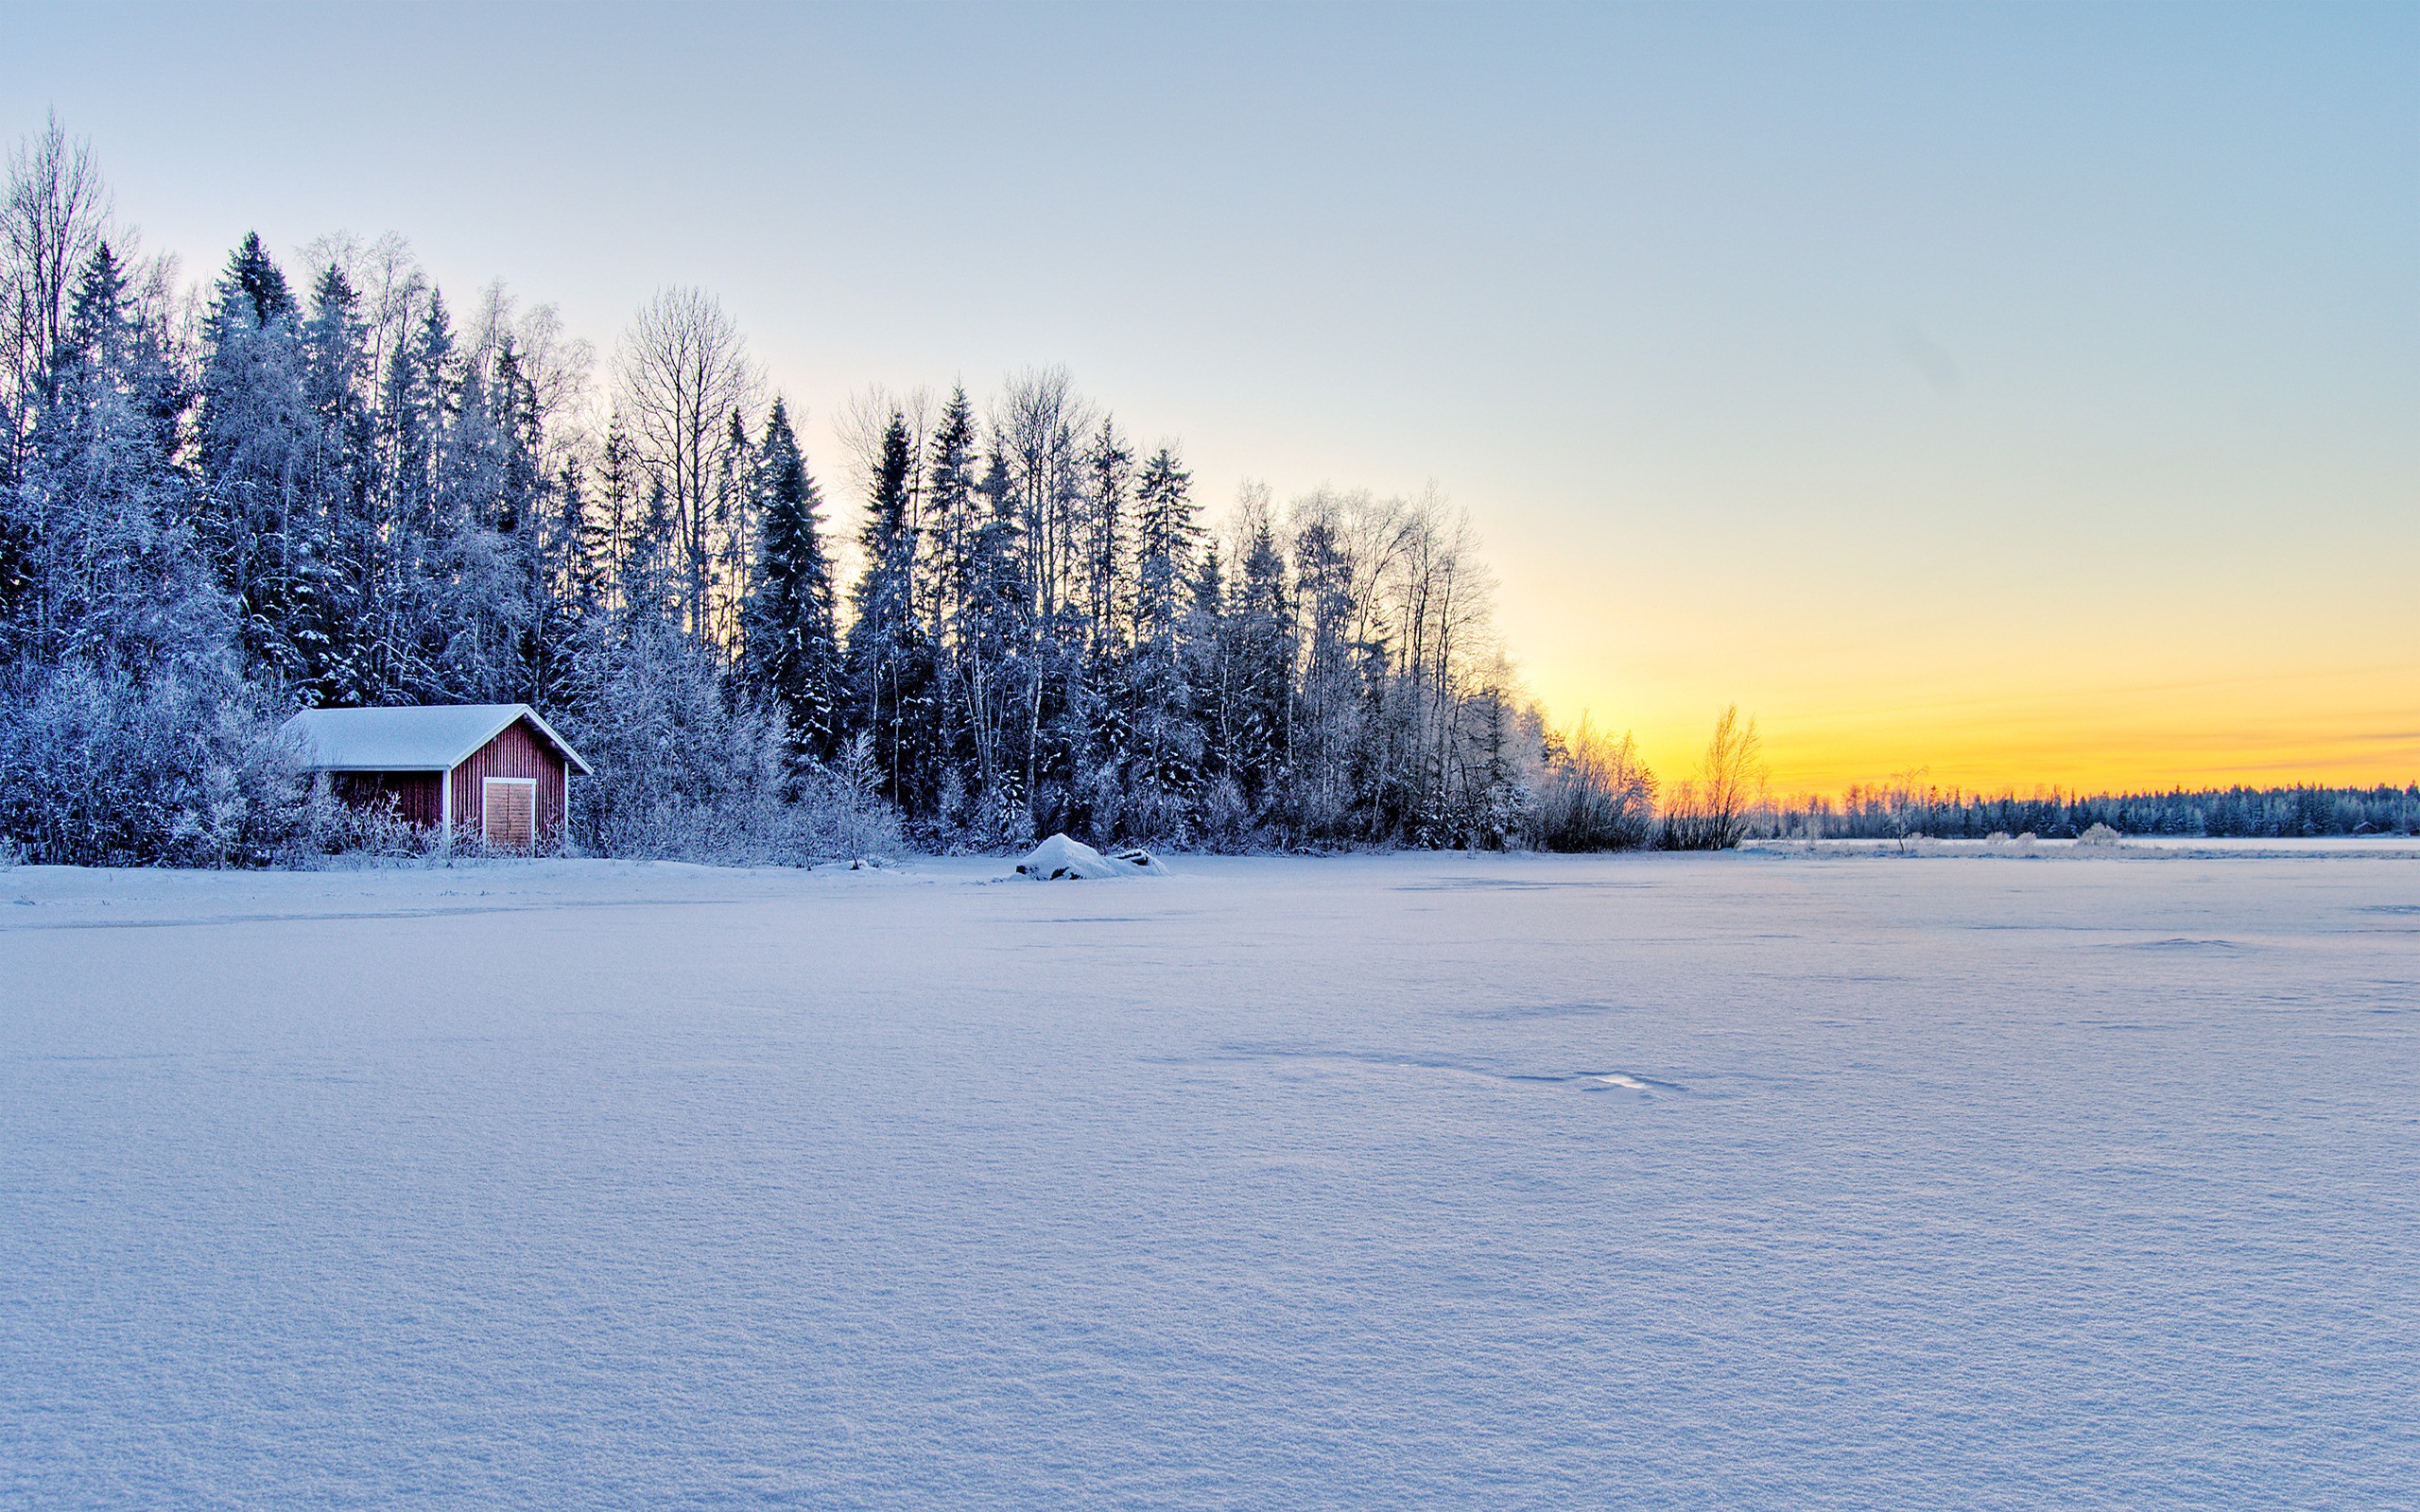 Winter landscape desktop wallpaper. Photography featuring snowy scene.